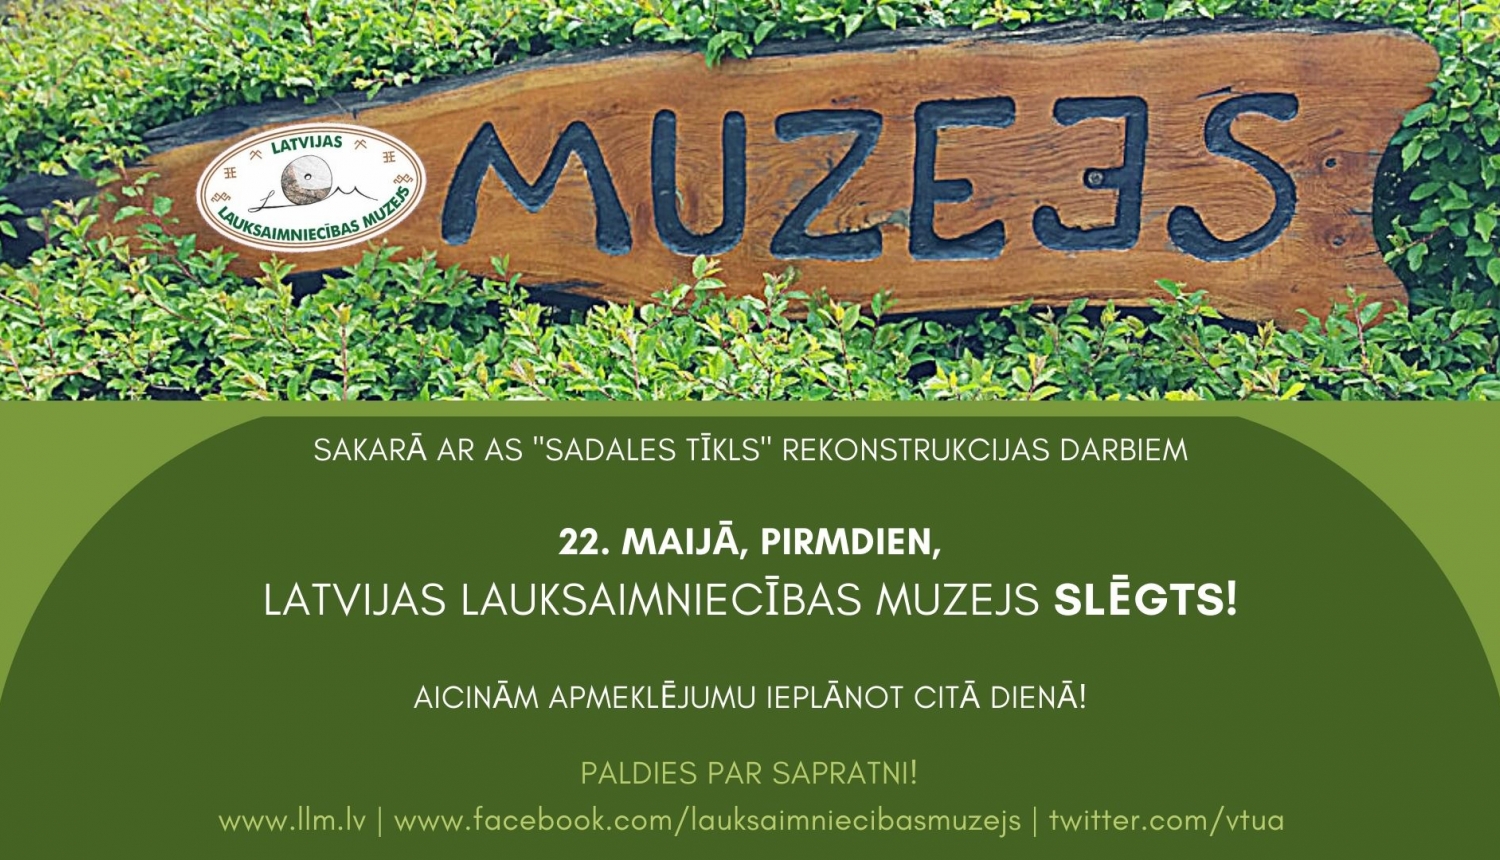 22. maijā LLM slēgts, fonā zaļš krūms ar tumšu uzrakstu "Muzejs" uz koka dēļa